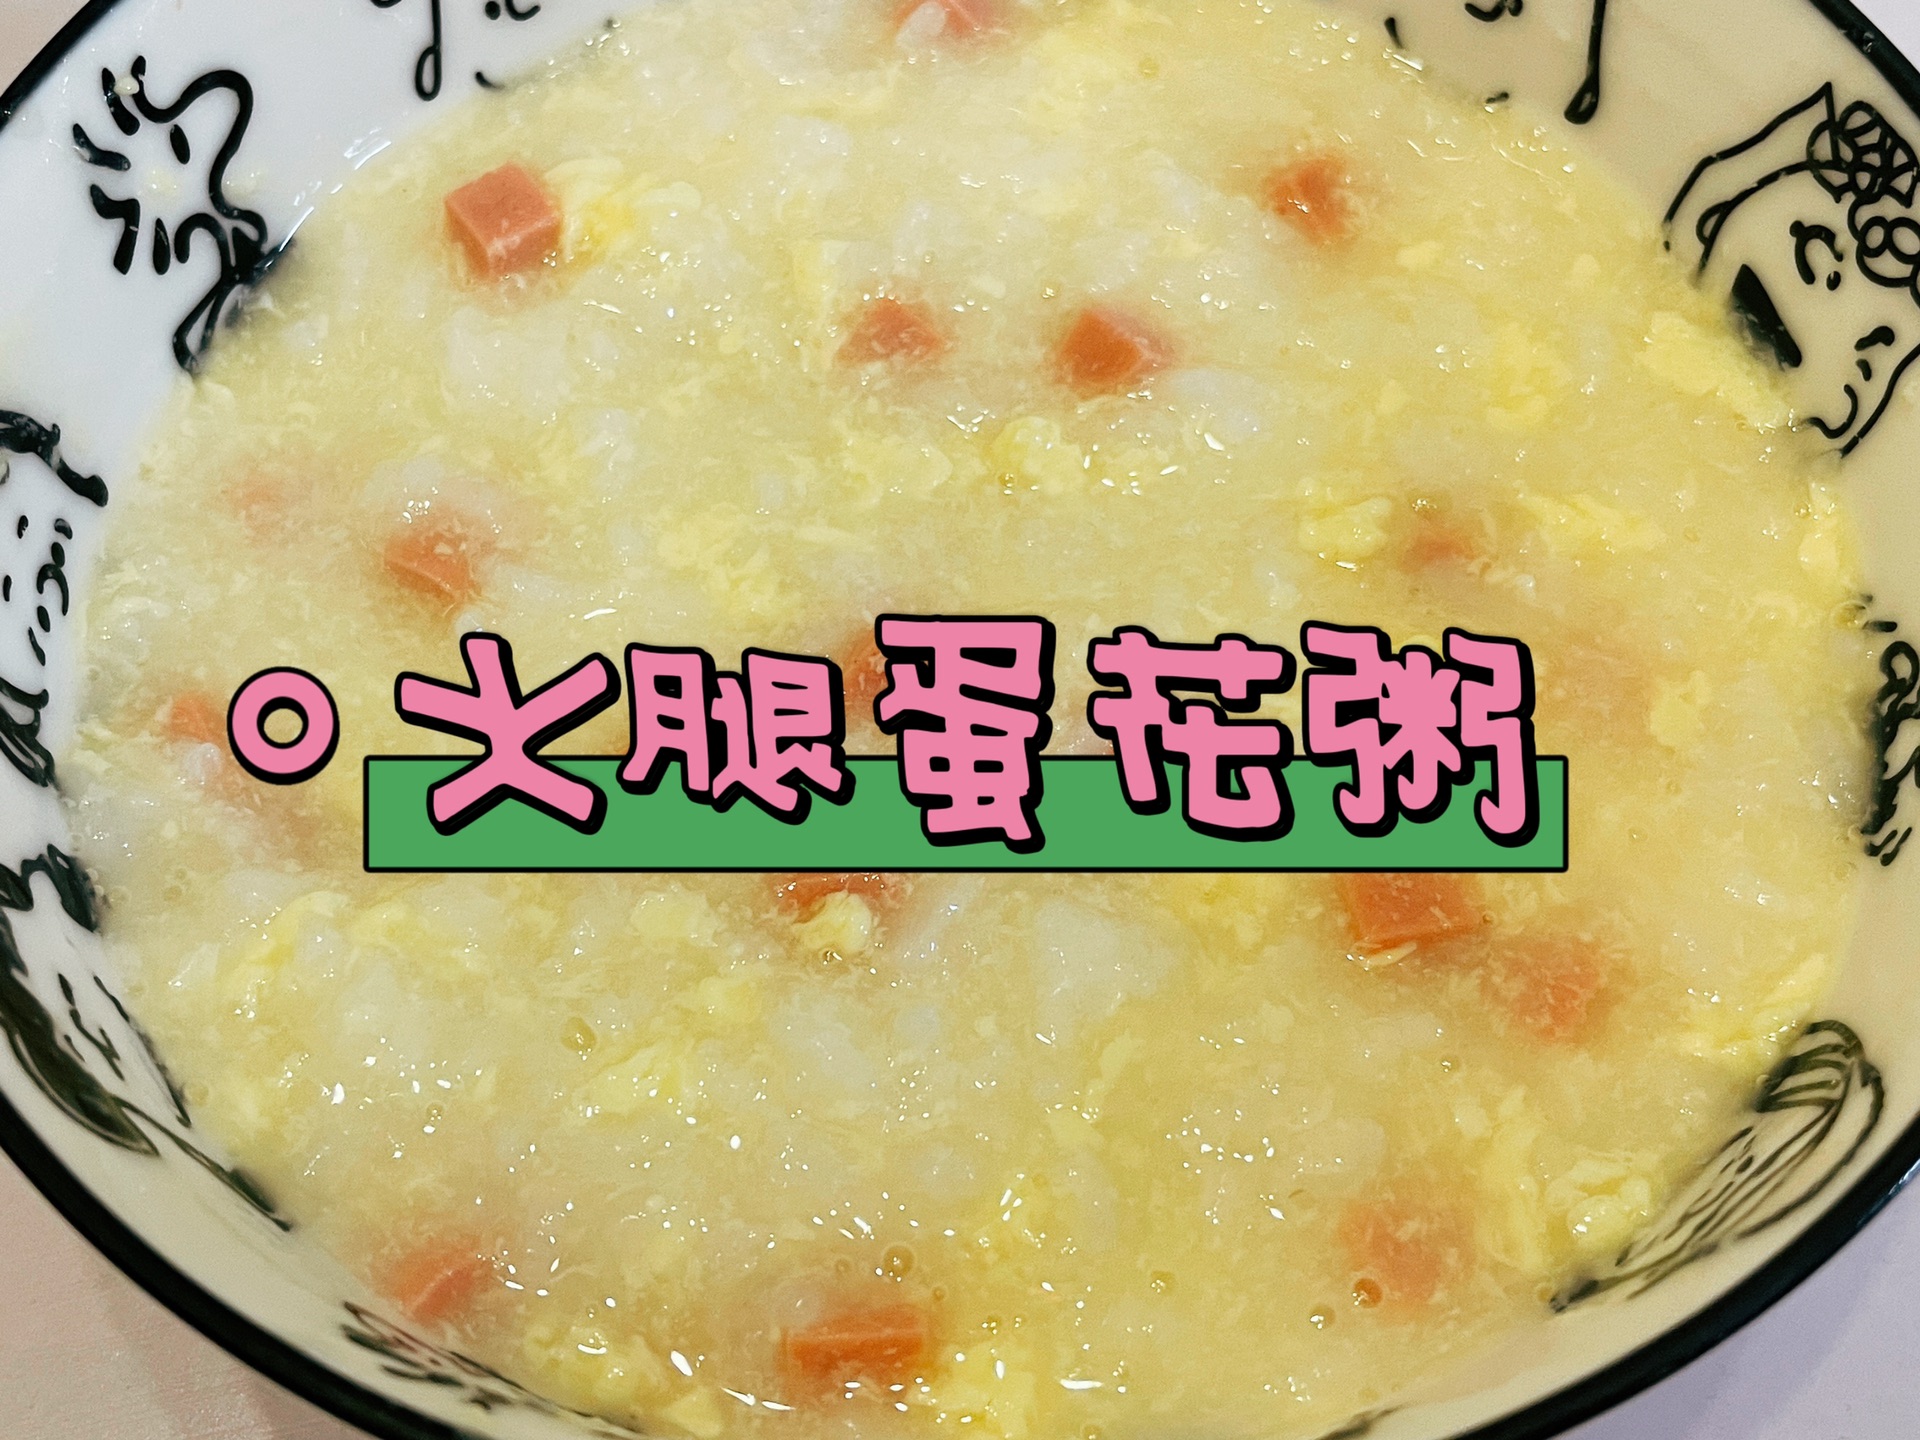 西式火腿玉米濃湯 by Vina的夢幻小廚房 - 愛料理